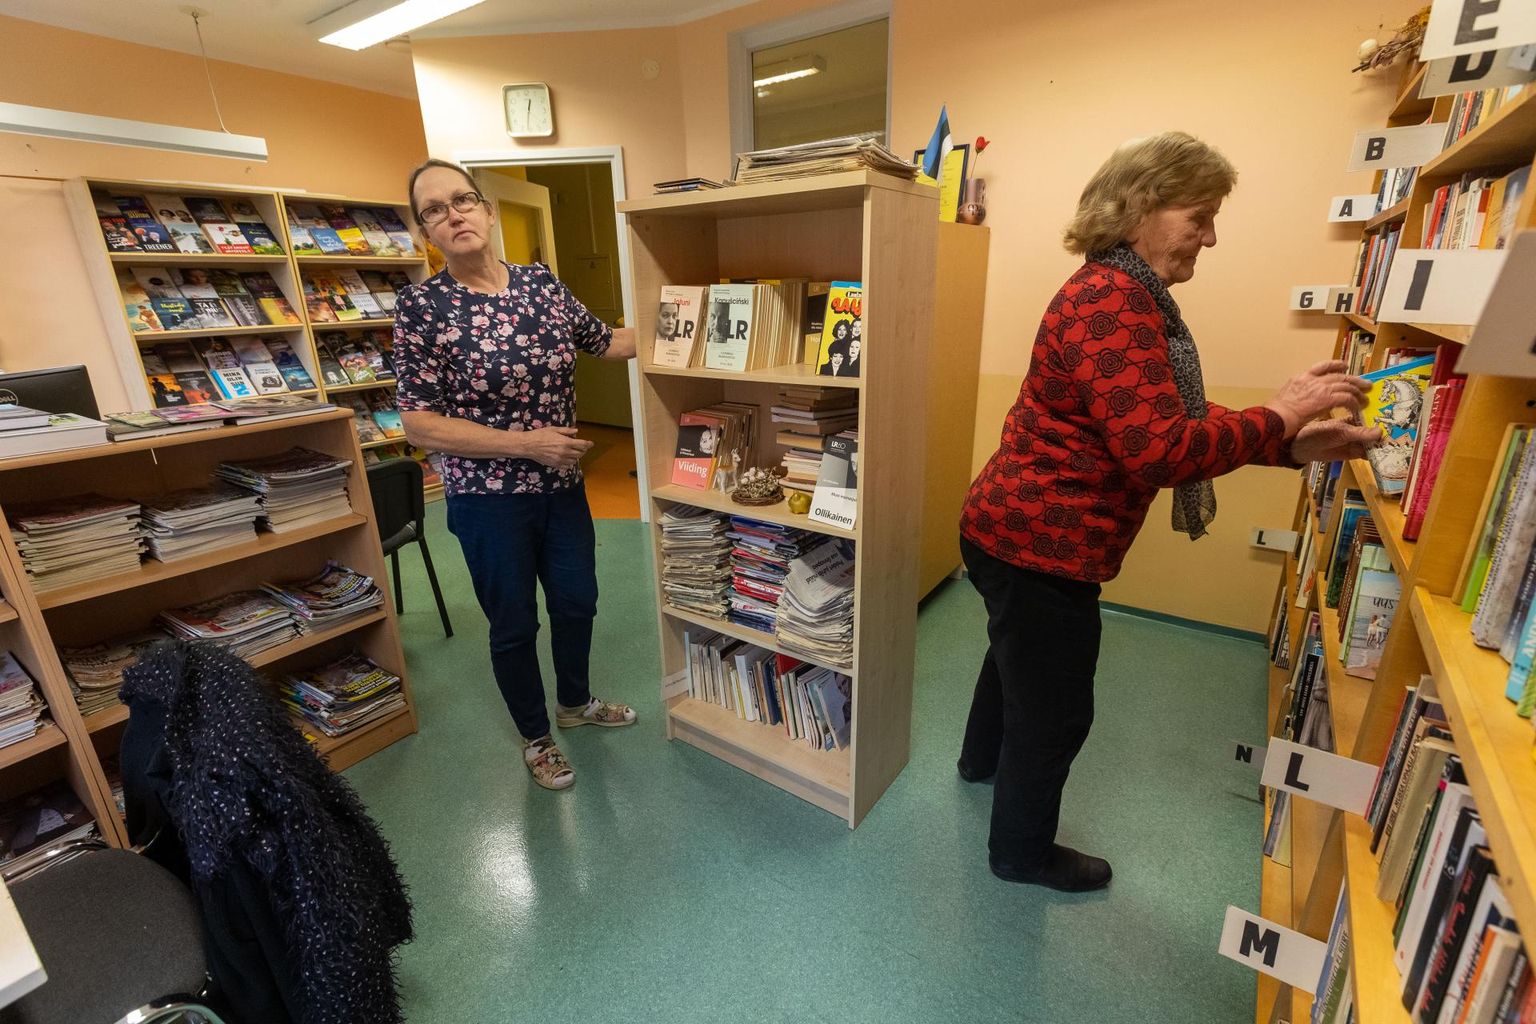 Paide linnavalitsus peab plaani Sargvere raamatukogu sulgeda ja külamaja välja rentida. Raamatukoguhoidja Anu Käärik (vasakul) ütleb, et lugejaid pole väikese külaraamatukogu kohta sugugi vähe.